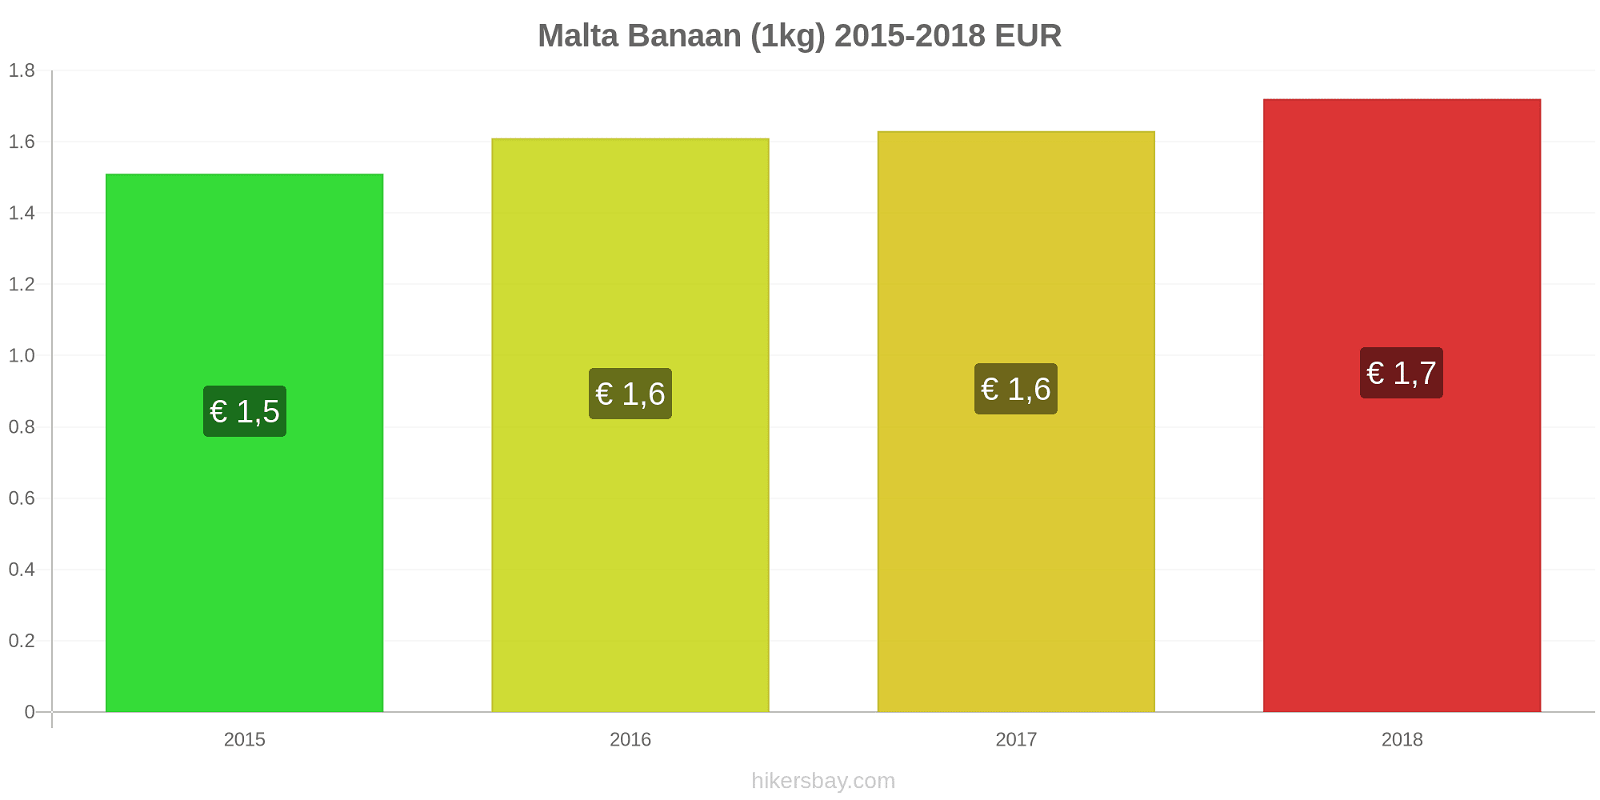 Malta prijswijzigingen Bananen (1kg) hikersbay.com